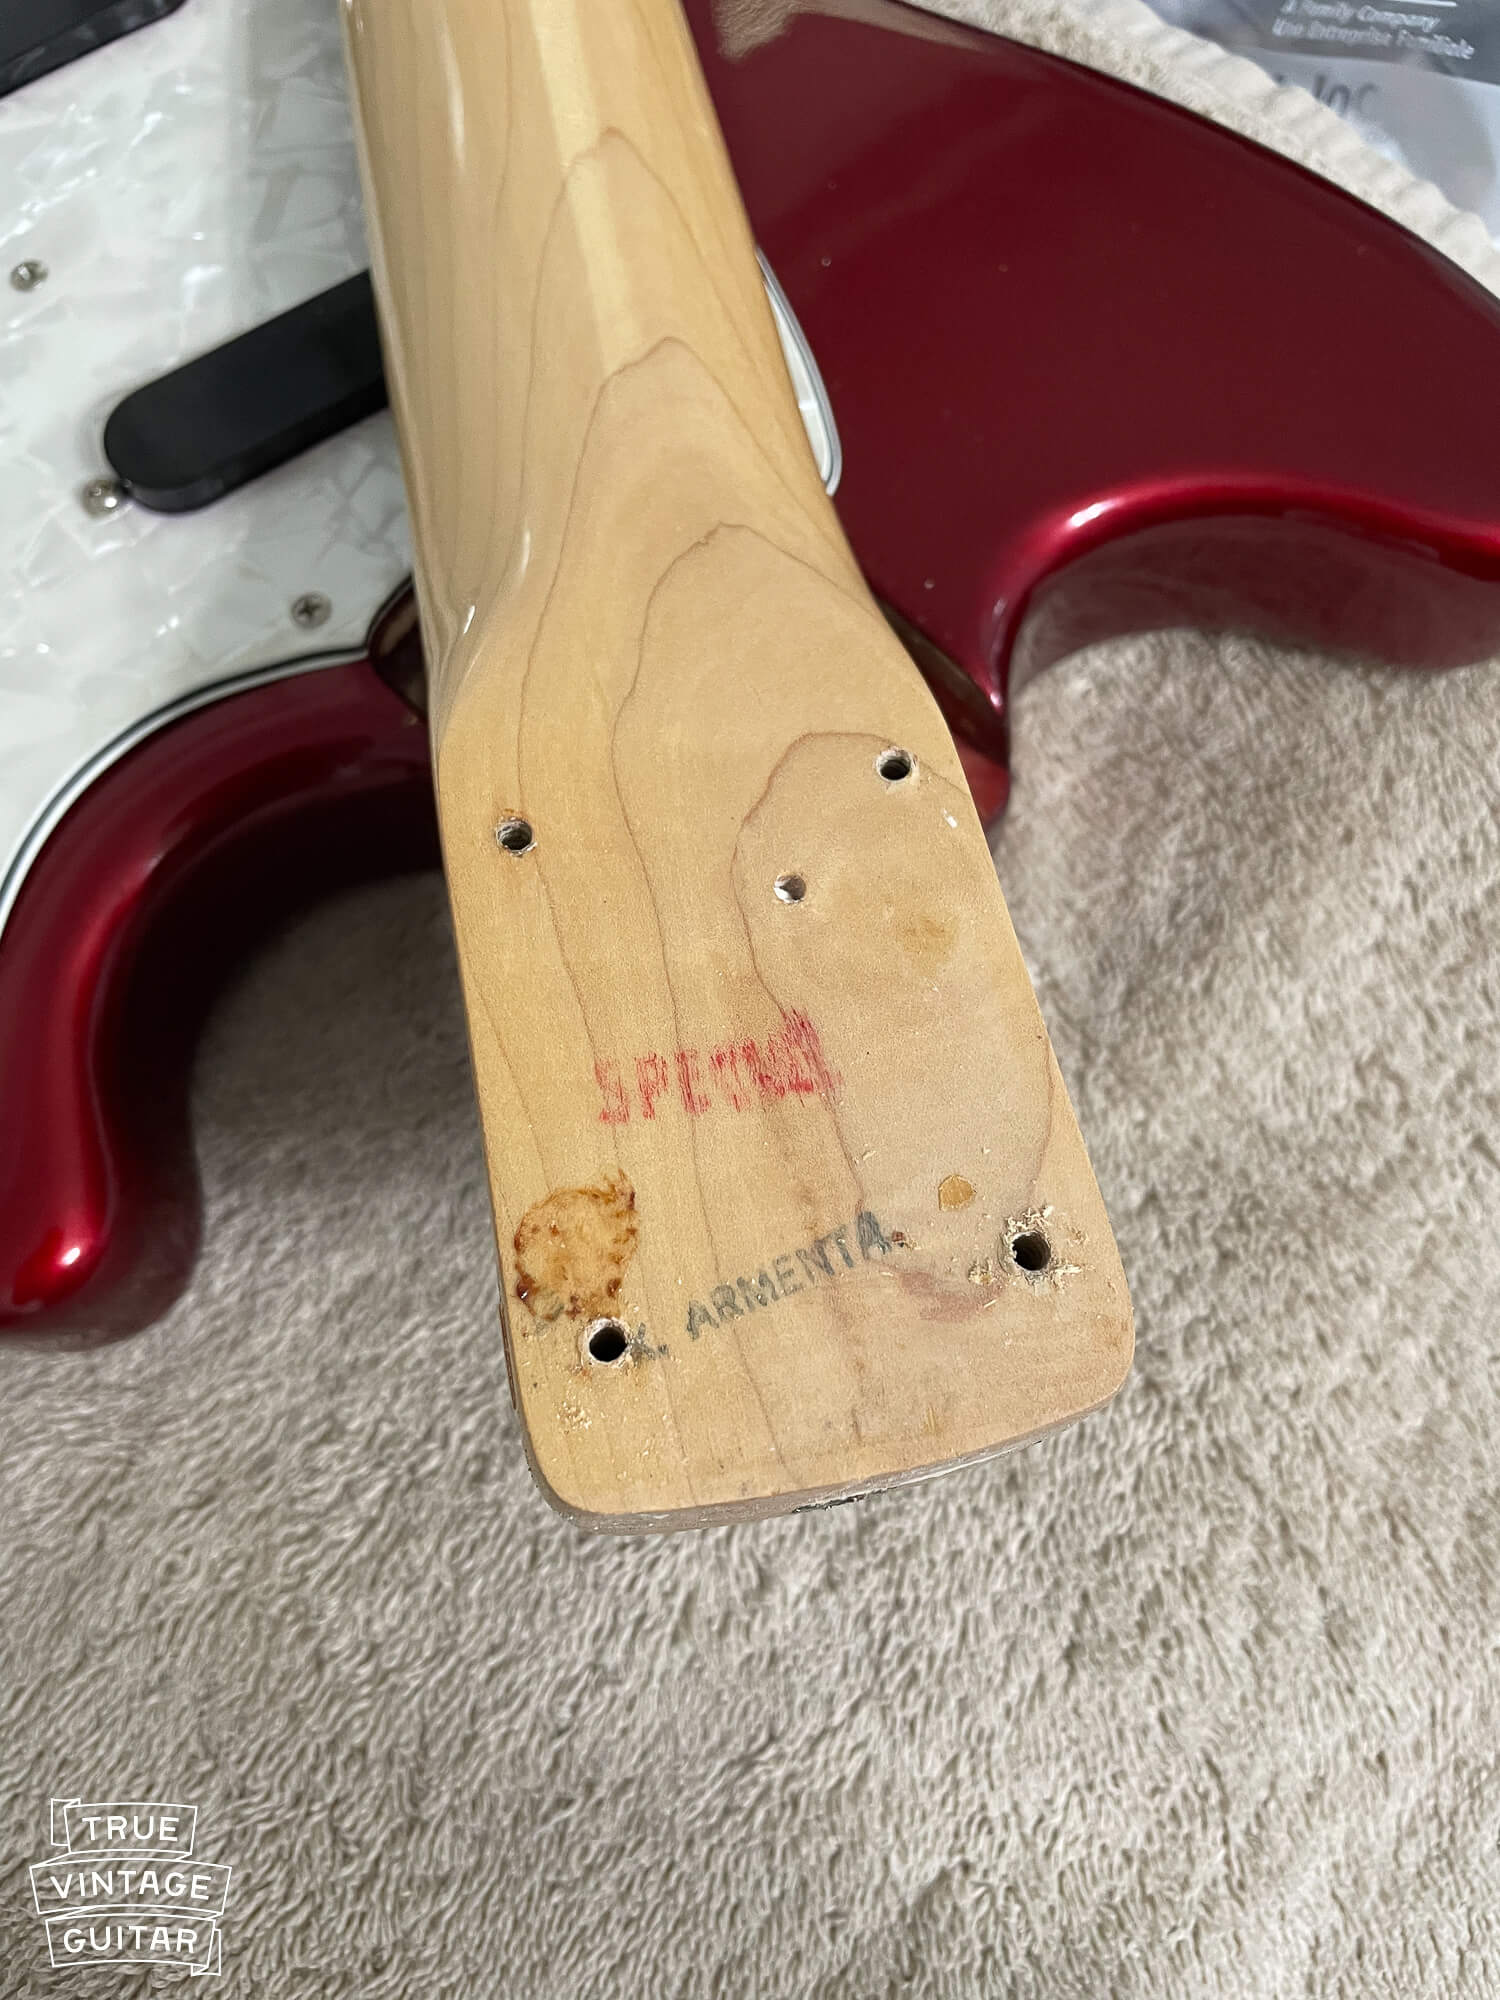 Red SPECIAL stamp on vintage Fender guitar neck